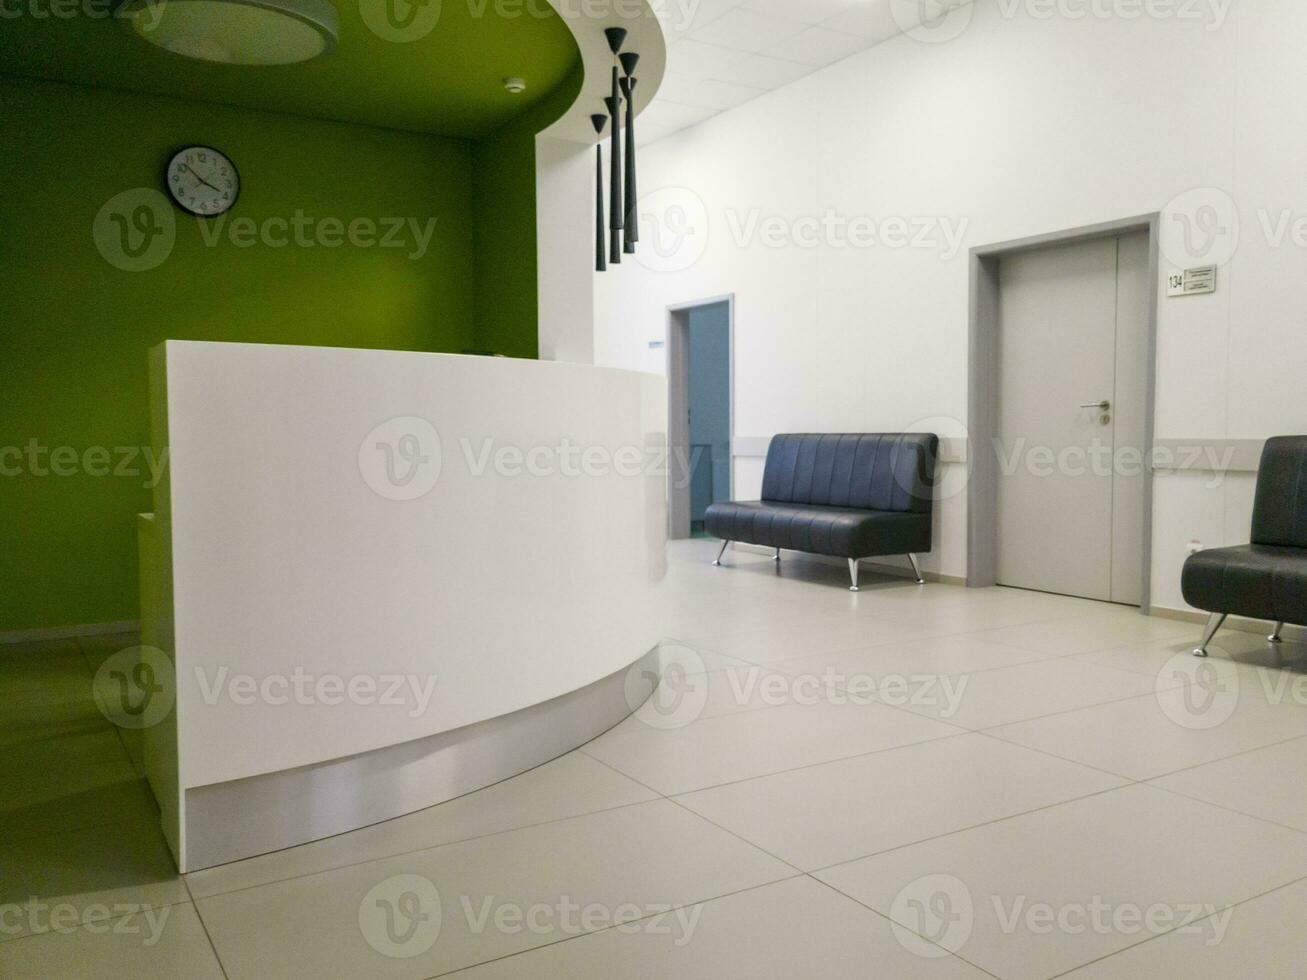 tiro do a corredor dentro a moderno clínica. cuidados de saúde foto